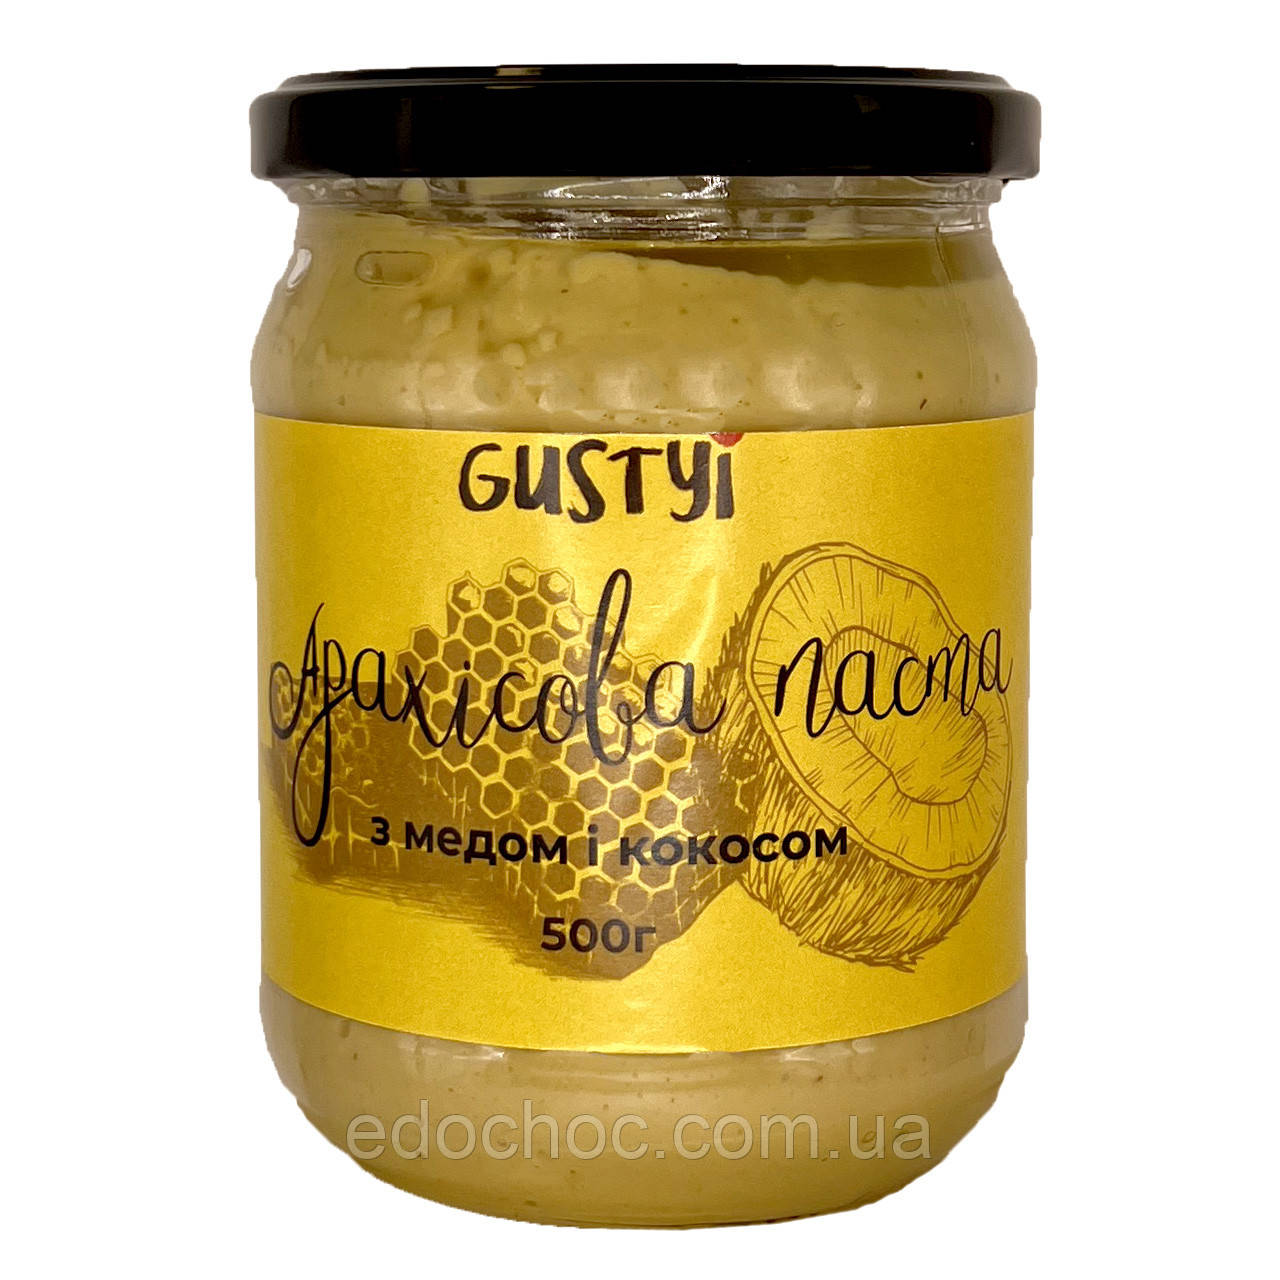 Арахісова паста, з медом та кокосом, ТМ Gustyi, 500г